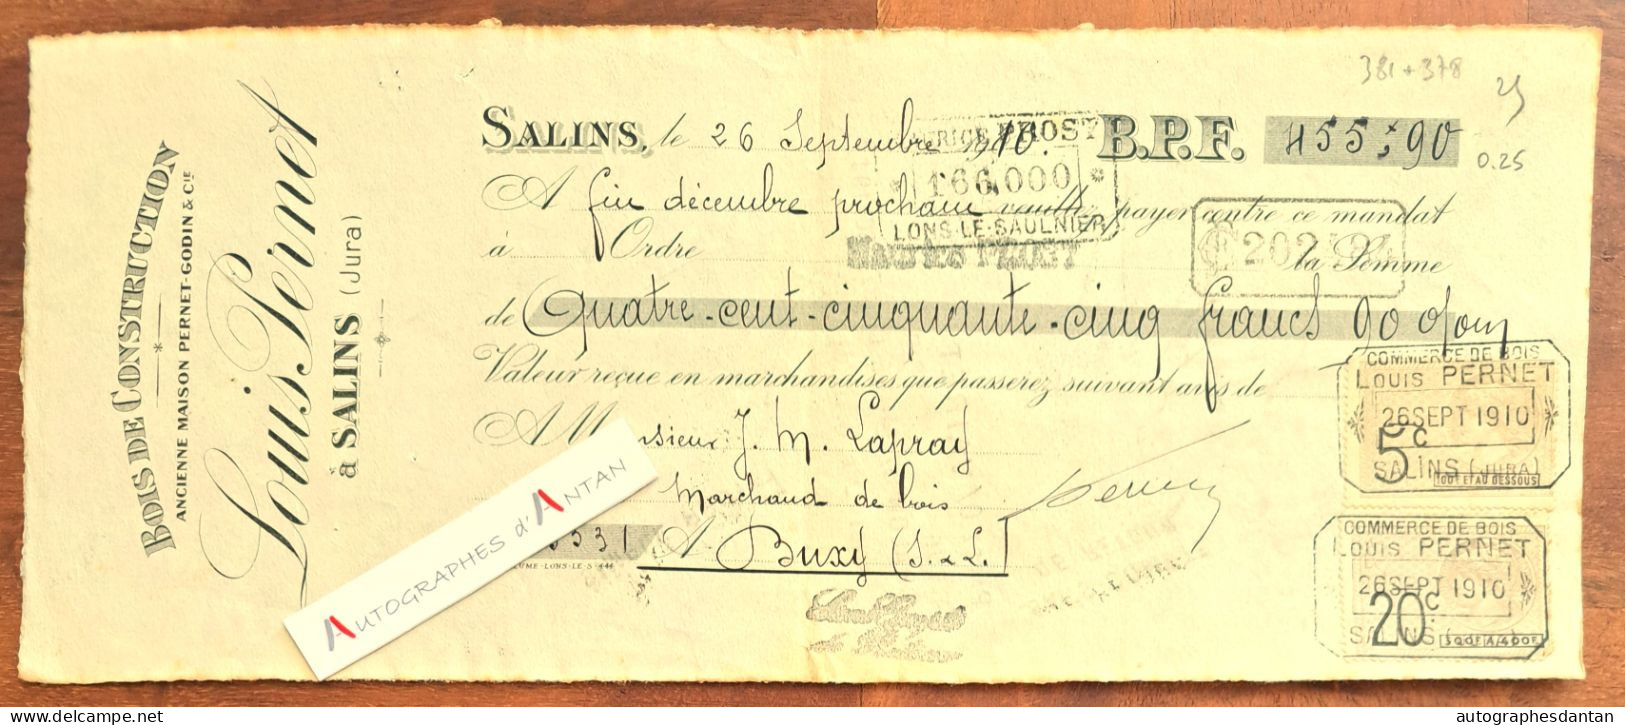 ● SALINS 1910 Louis PERNET Bois De Construction (Jura) - Mandat à M. Lapray à Buxy (Saône Et Loire) - Godin - Lettres De Change